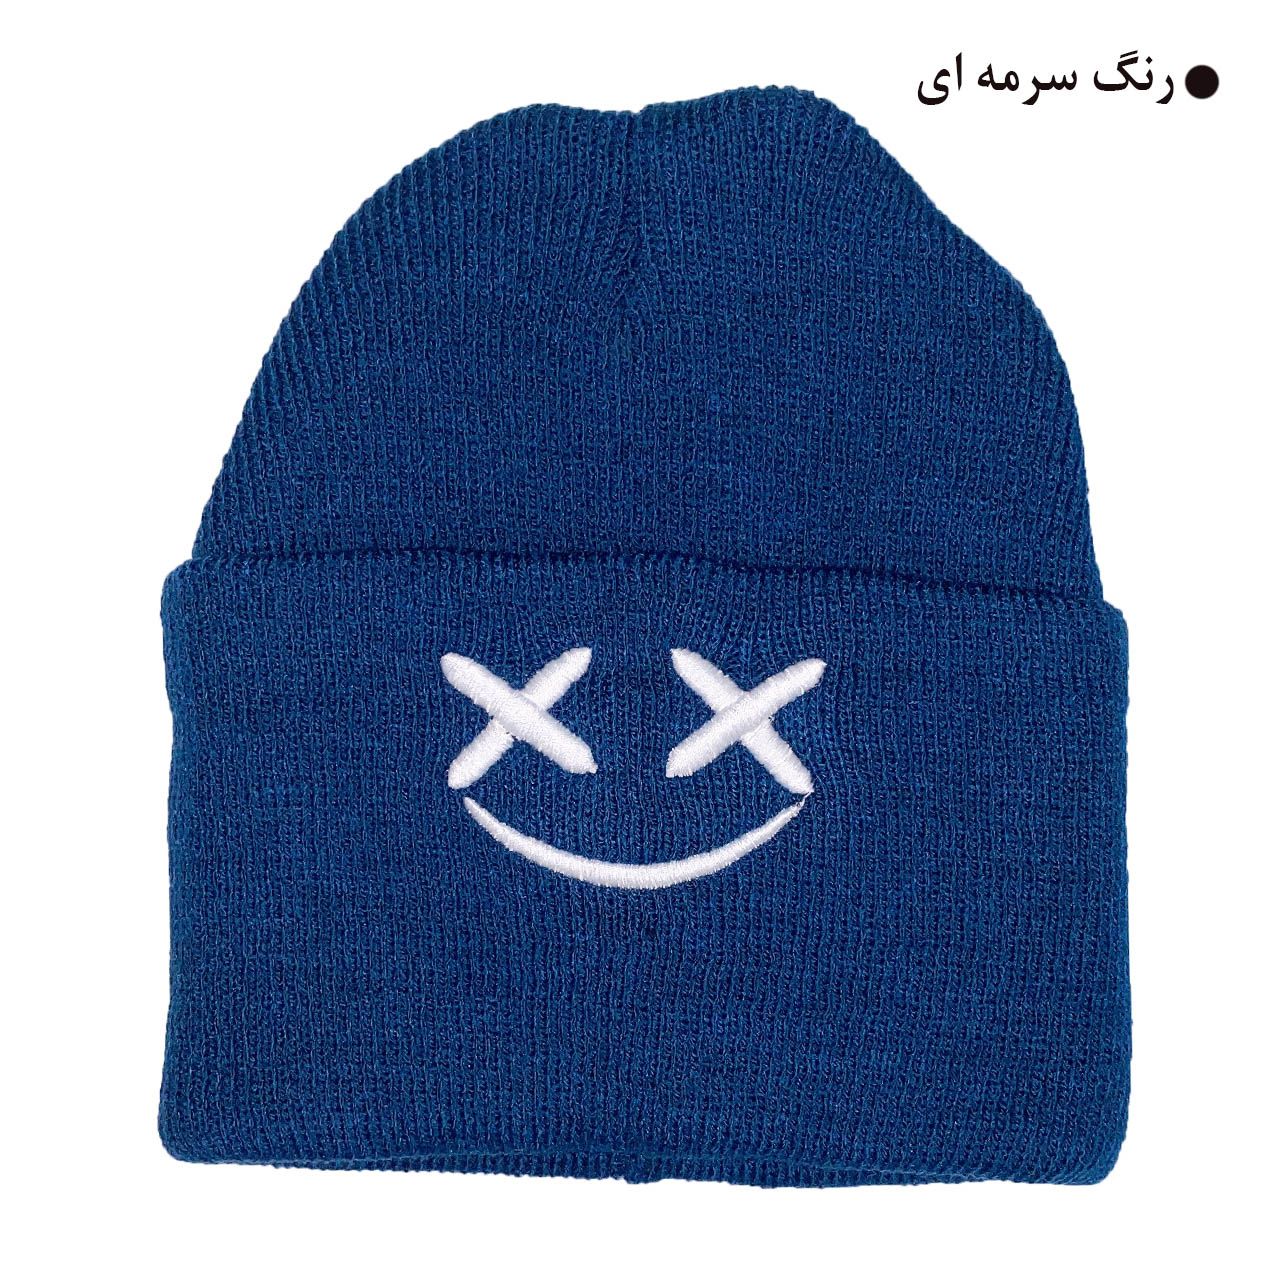 کلاه بافتنی مدل زمستانی طرح لبخند کد 121 -  - 9